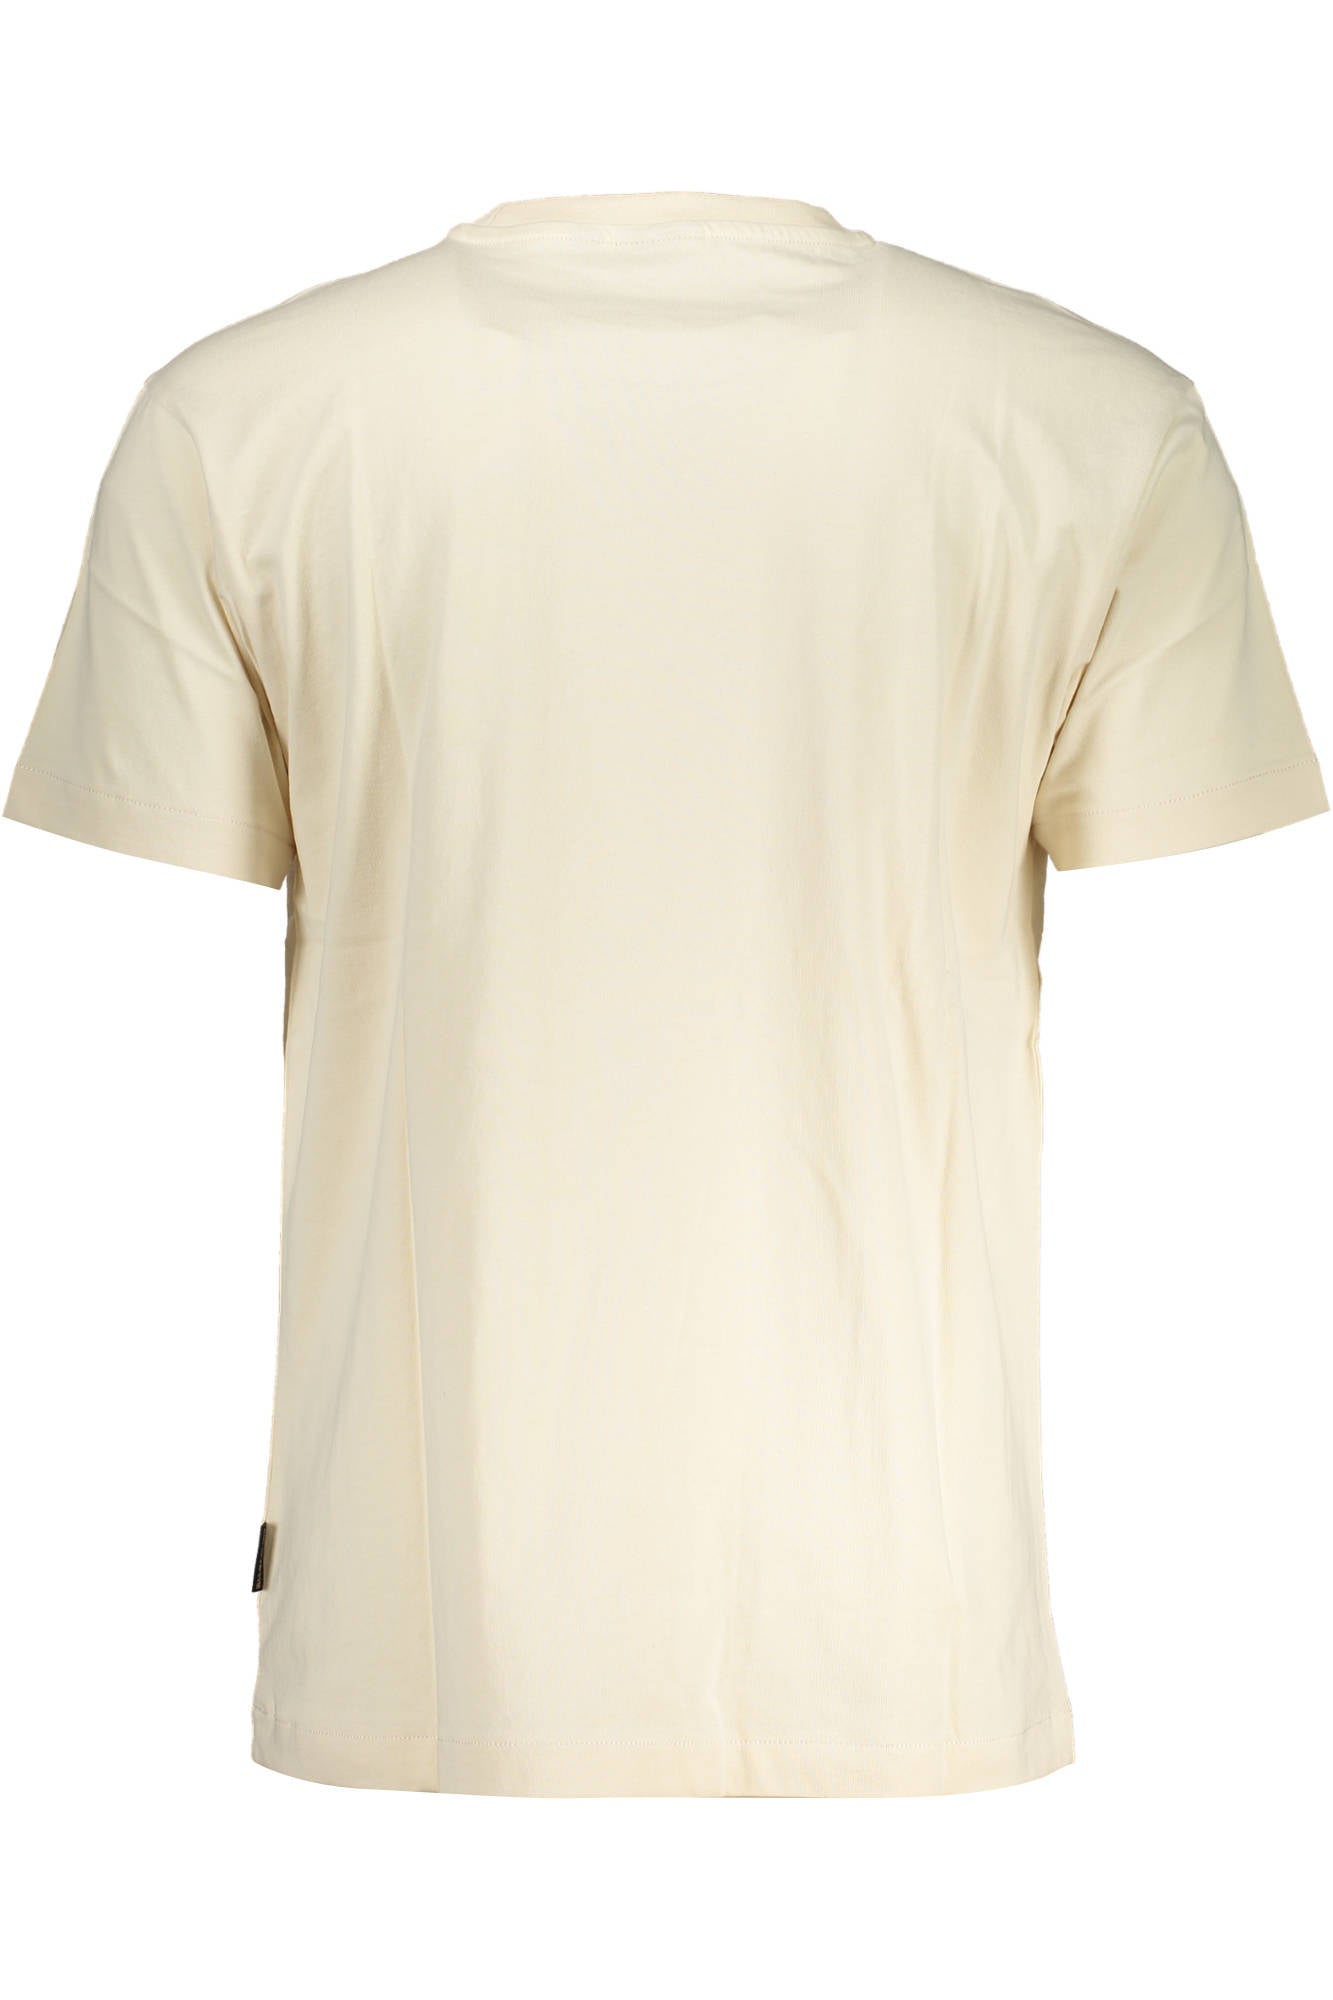 Napapijri White Cotton T-Shirt - Fizigo